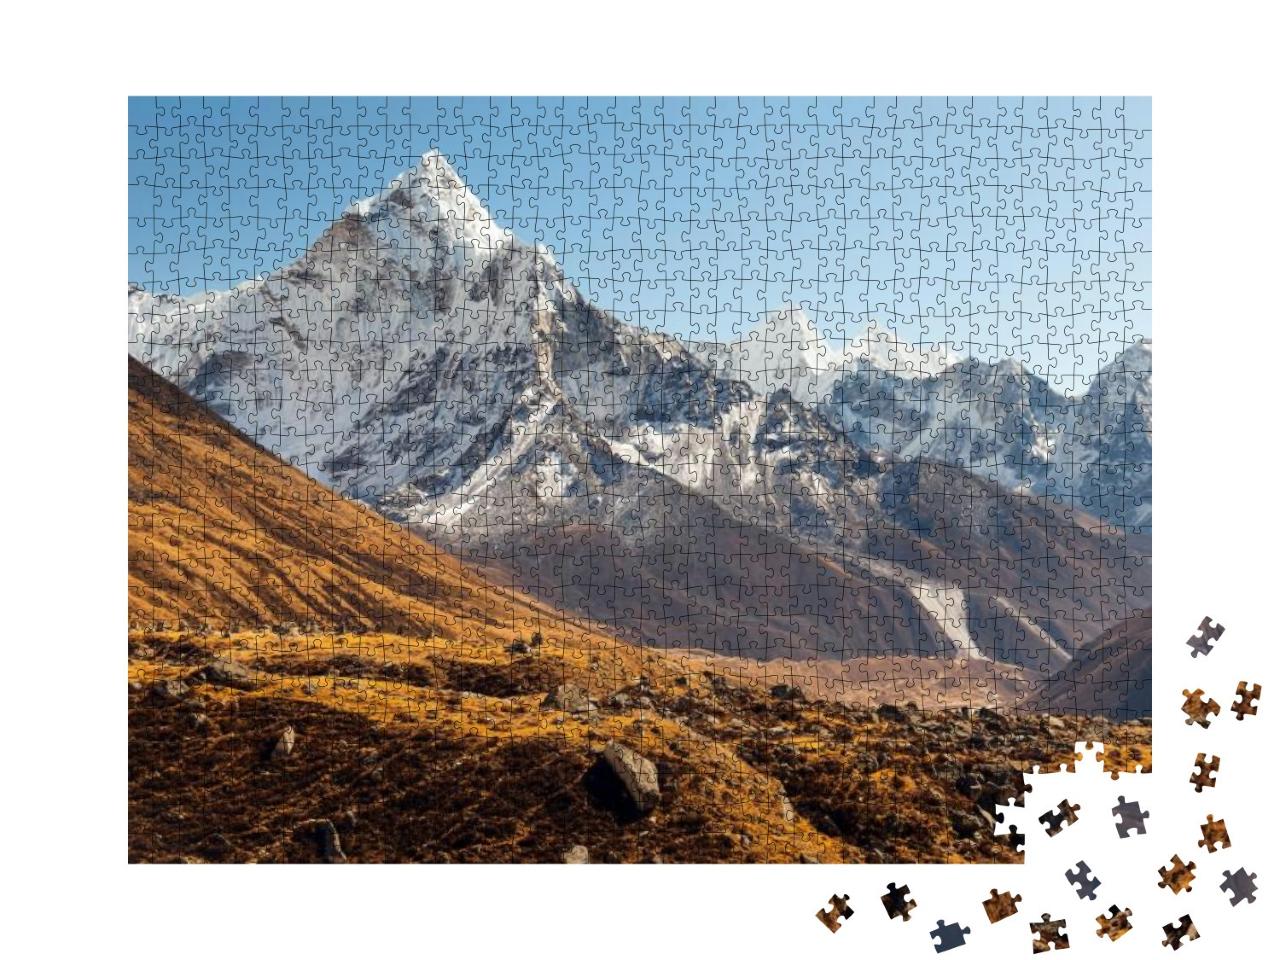 Ama Dablam, Everest Region, Himalaya, Nepal... Jigsaw Puzzle with 1000 pieces